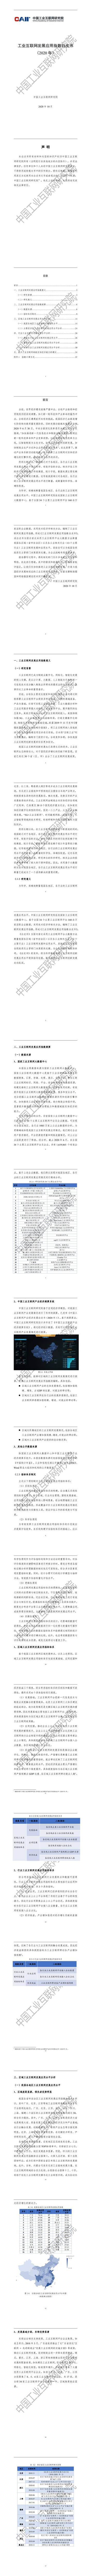 【中国工业互联网研究院】工业互联网行业发展应用指数白皮书（2020年）_0.jpg